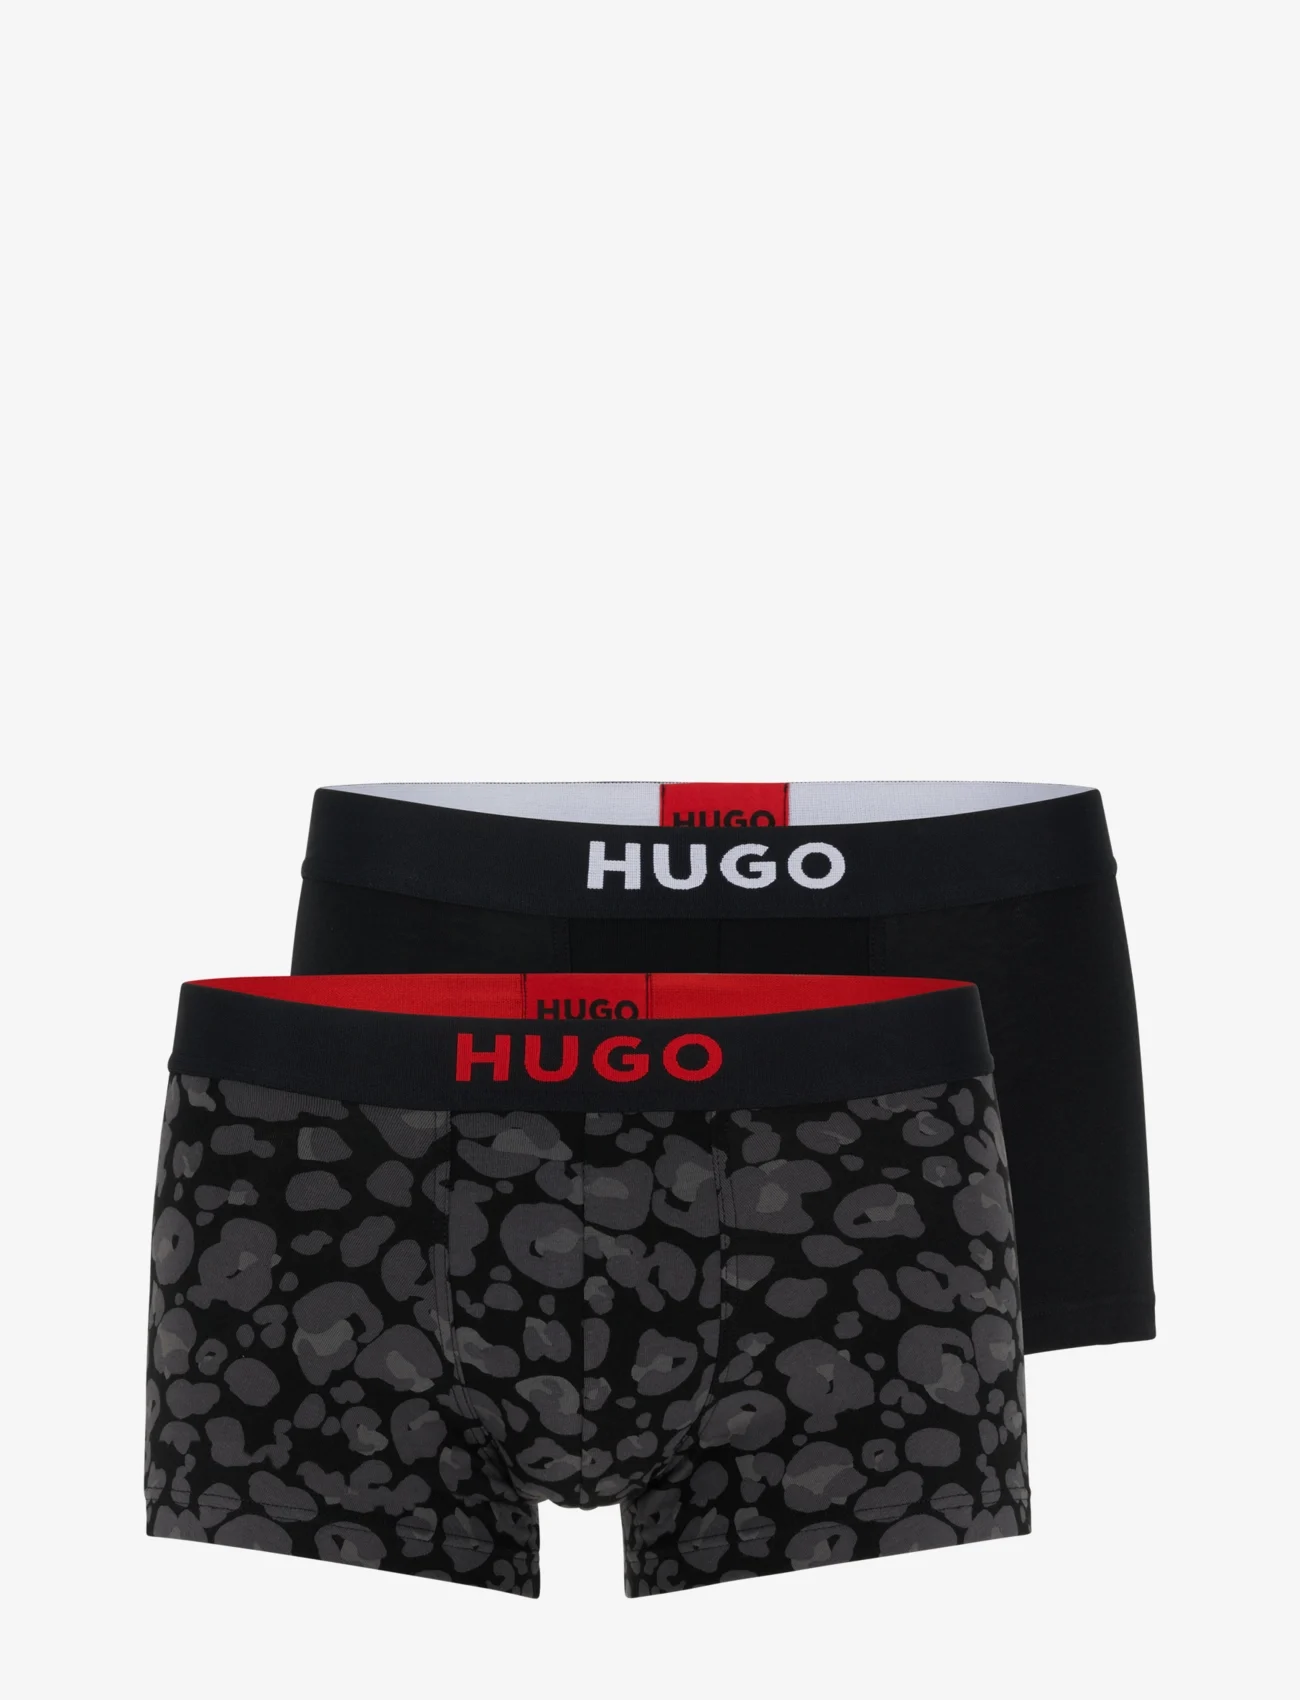 HUGO - TRUNK BROTHER PACK - boxerkalsonger - open grey - 0